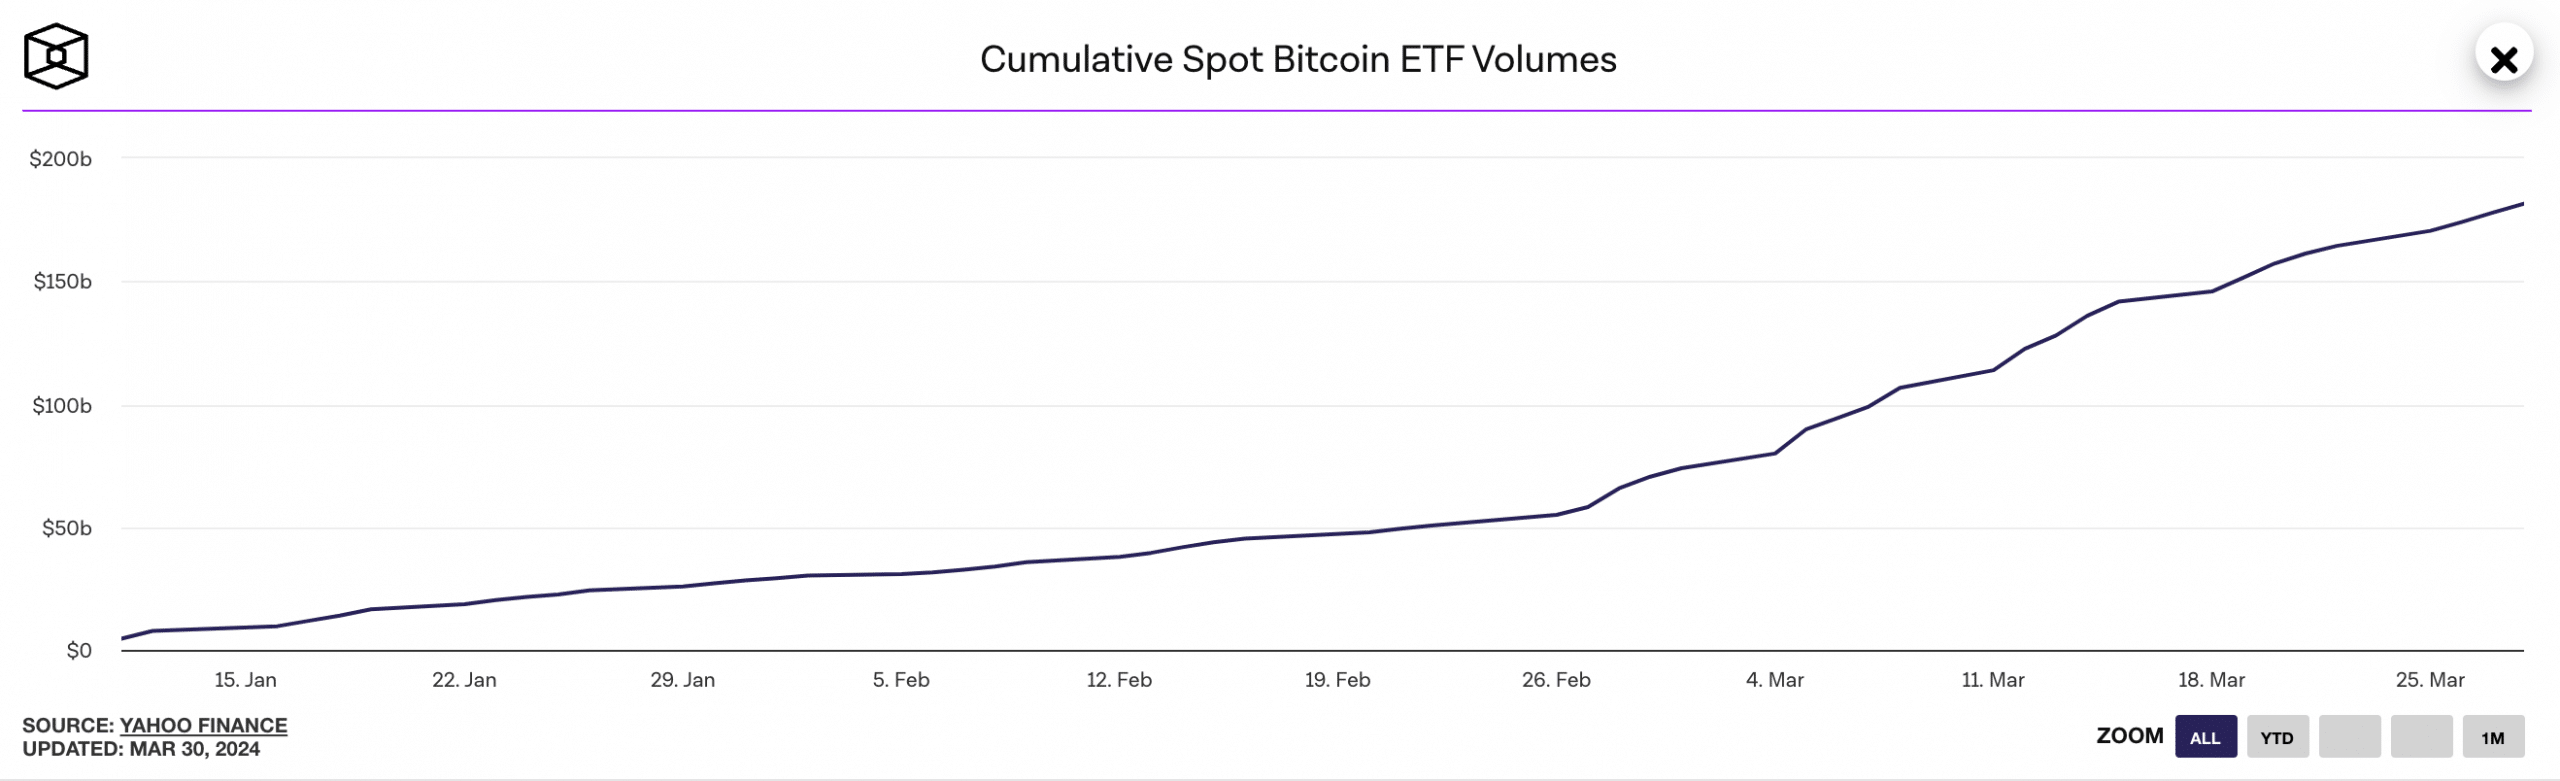 Cumulative BTC Spot ETF Volume